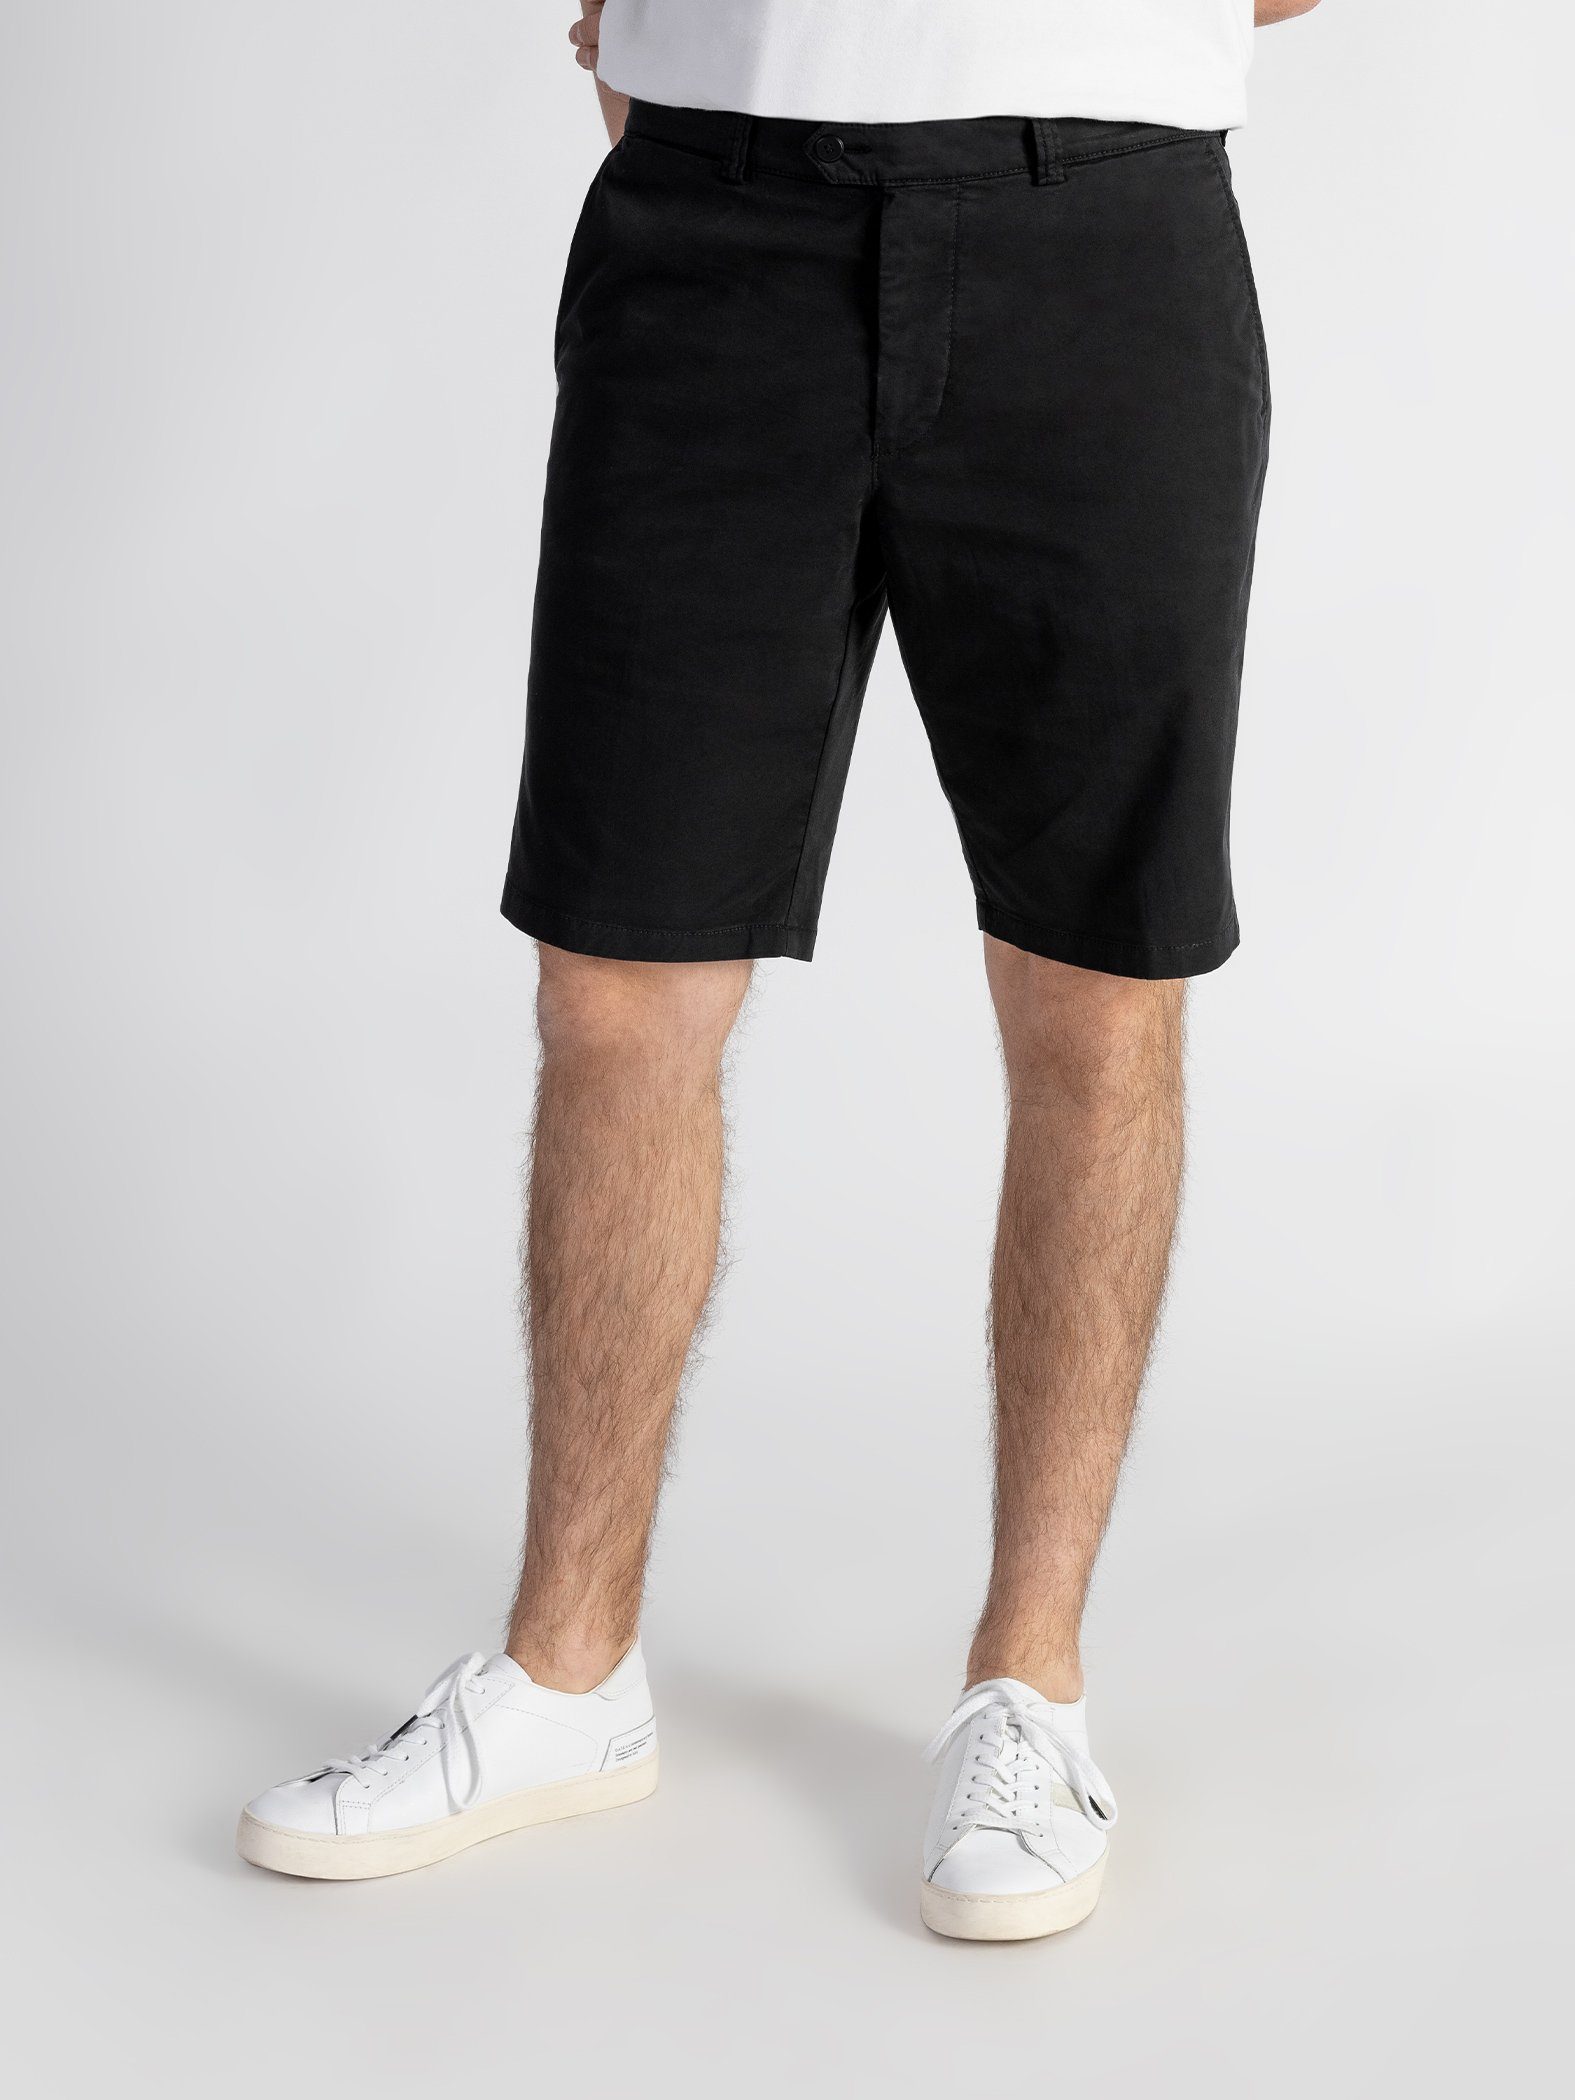 TwoMates Shorts Shorts mit elastischem Bund, Farbauswahl, GOTS-zertifiziert Schwarz